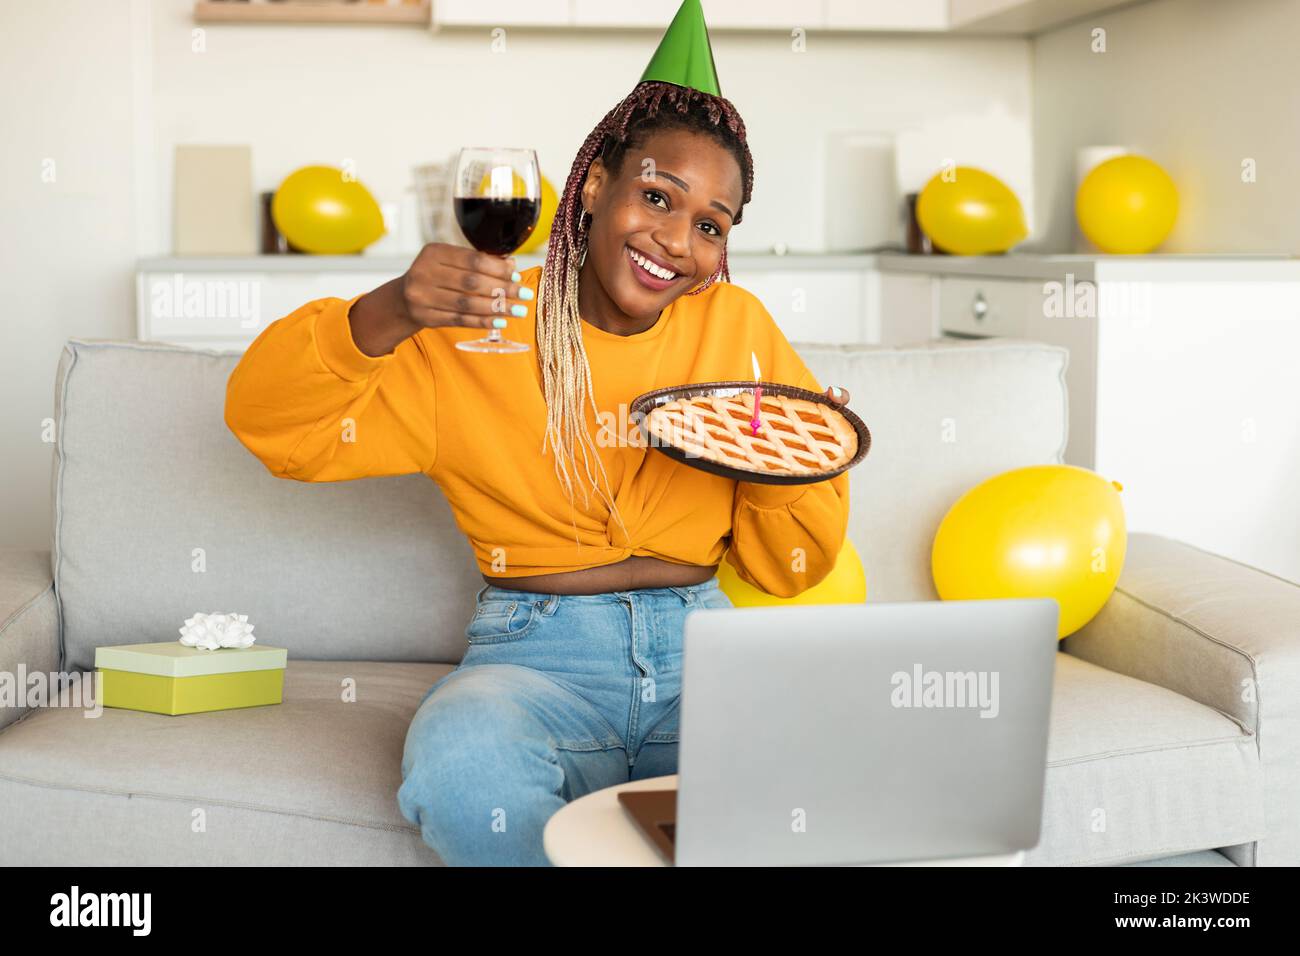 Anniversaire en ligne. Femme afro-américaine excitée célébrant le b-day, montrant une tarte et un verre de vin, les appels vidéo sur ordinateur portable Banque D'Images